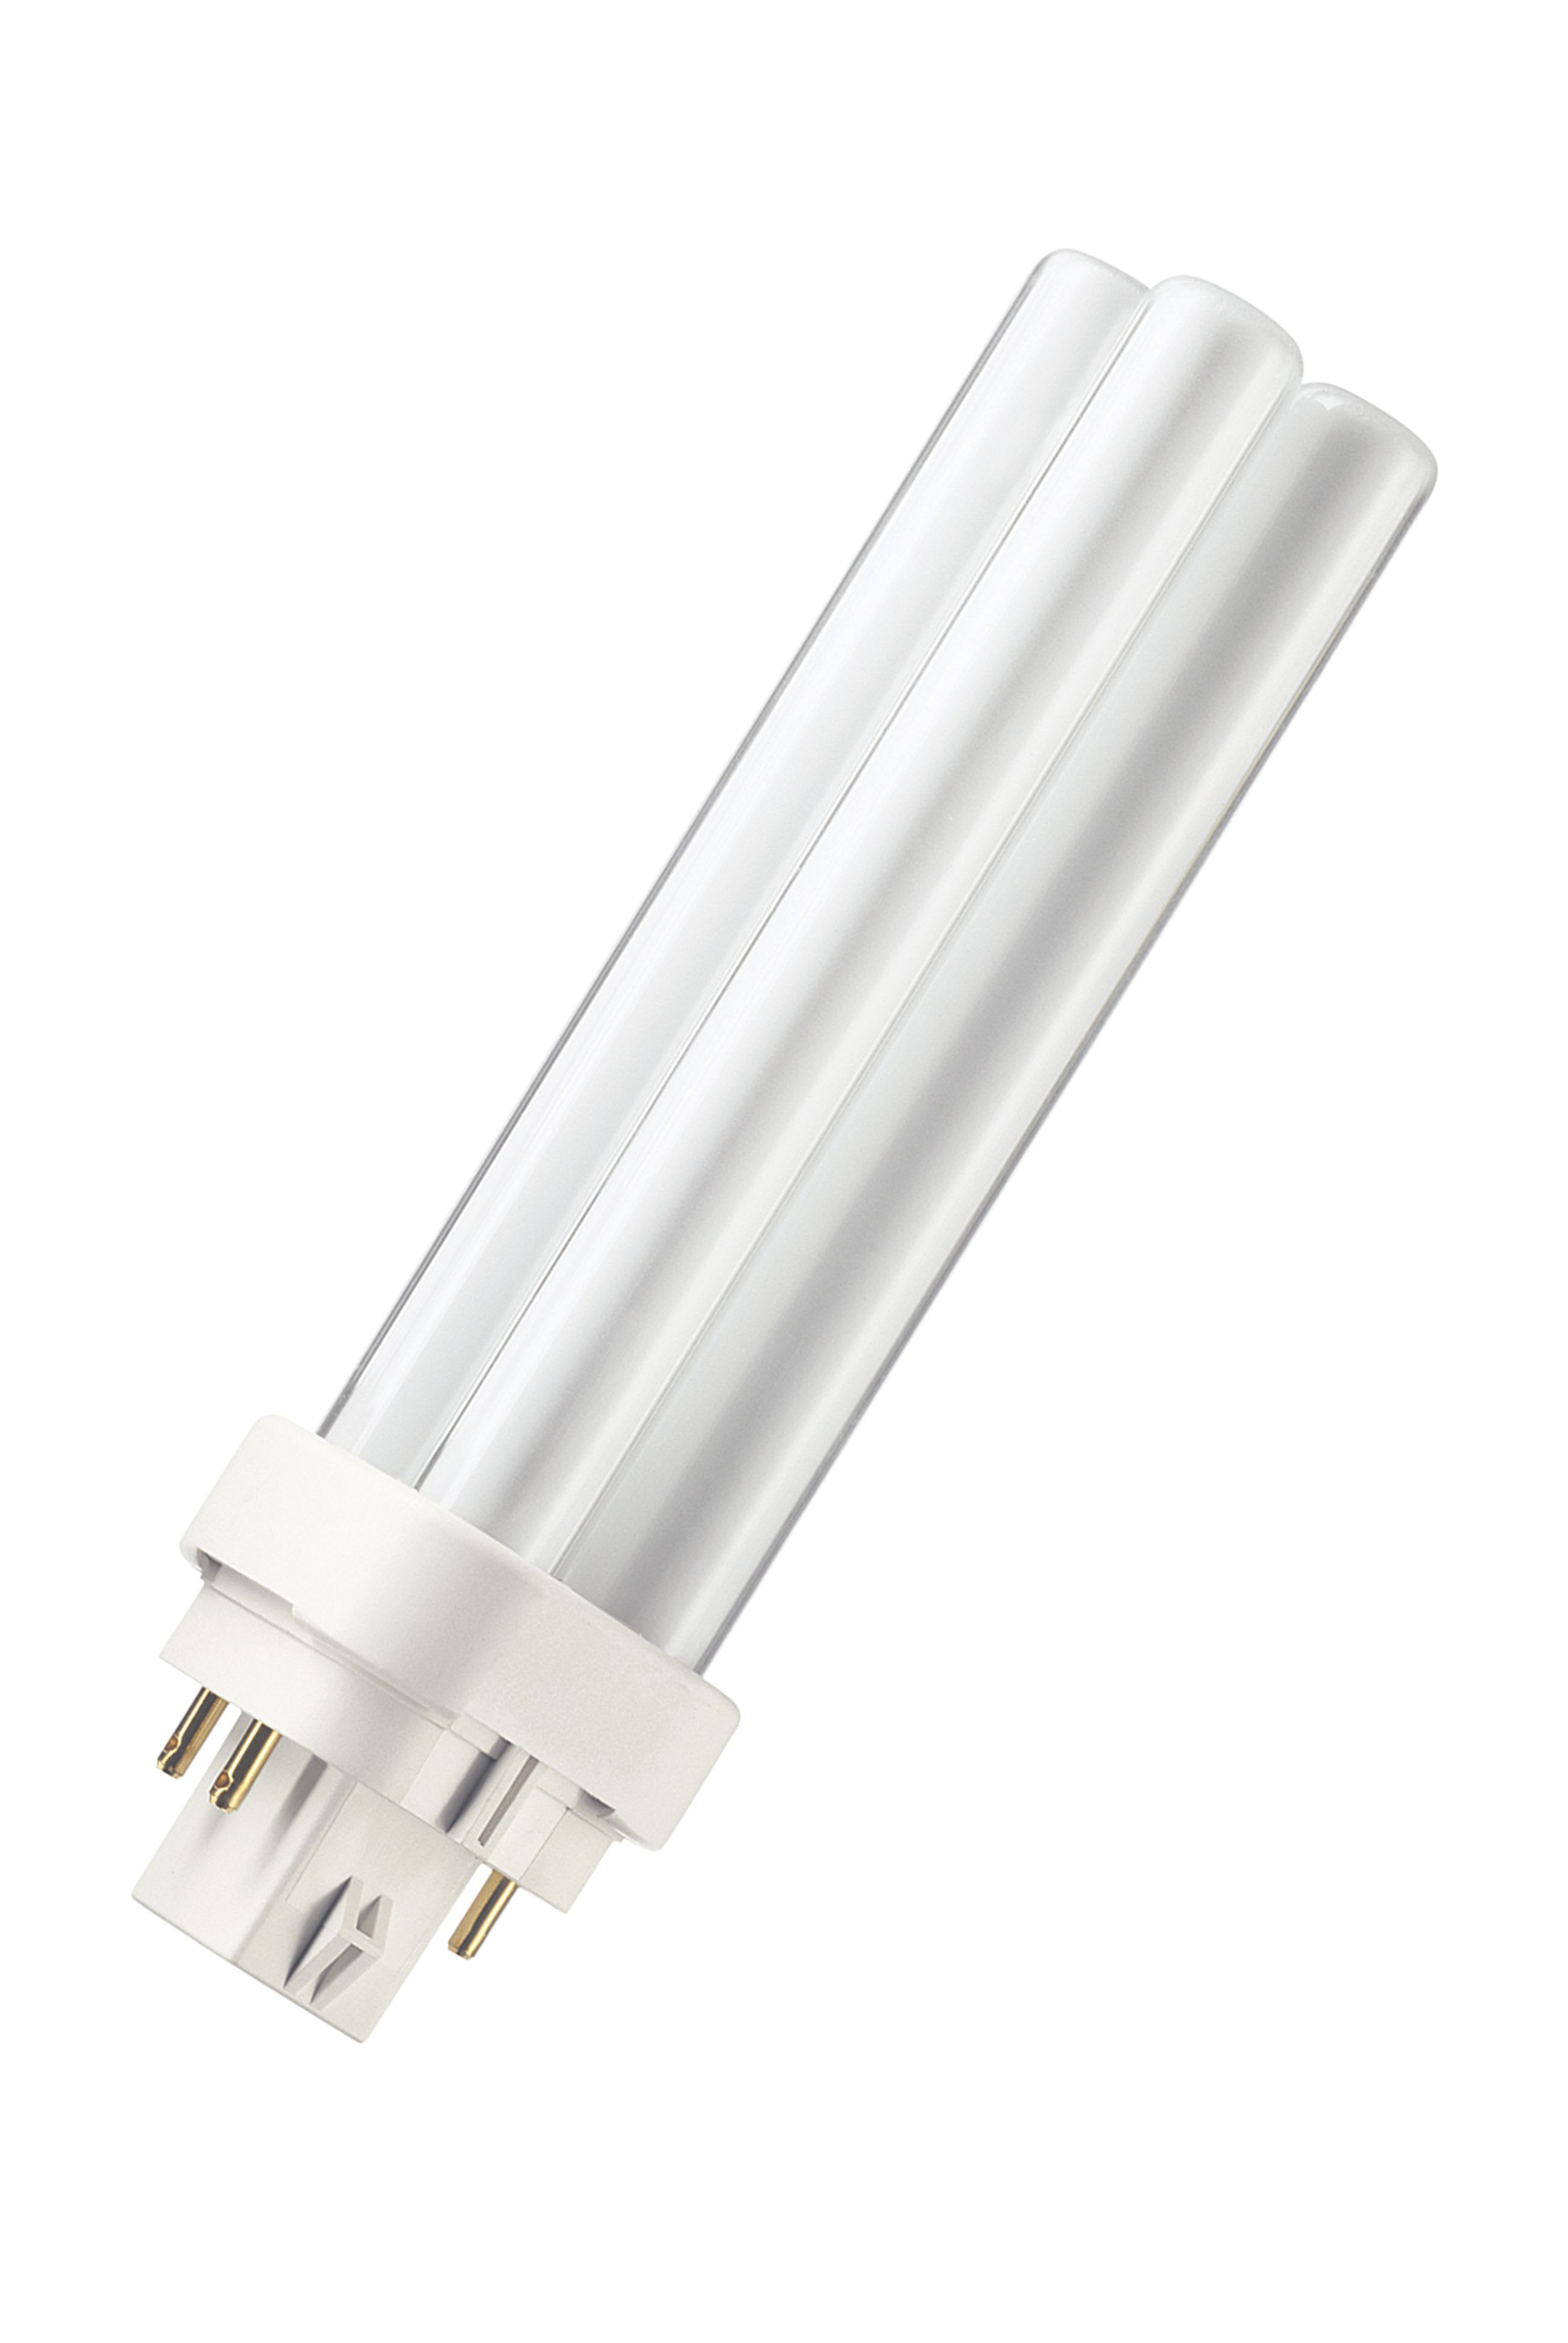 Bailey - PHI Lampe fluocompacte MASTER PL-C 13W/840/4P